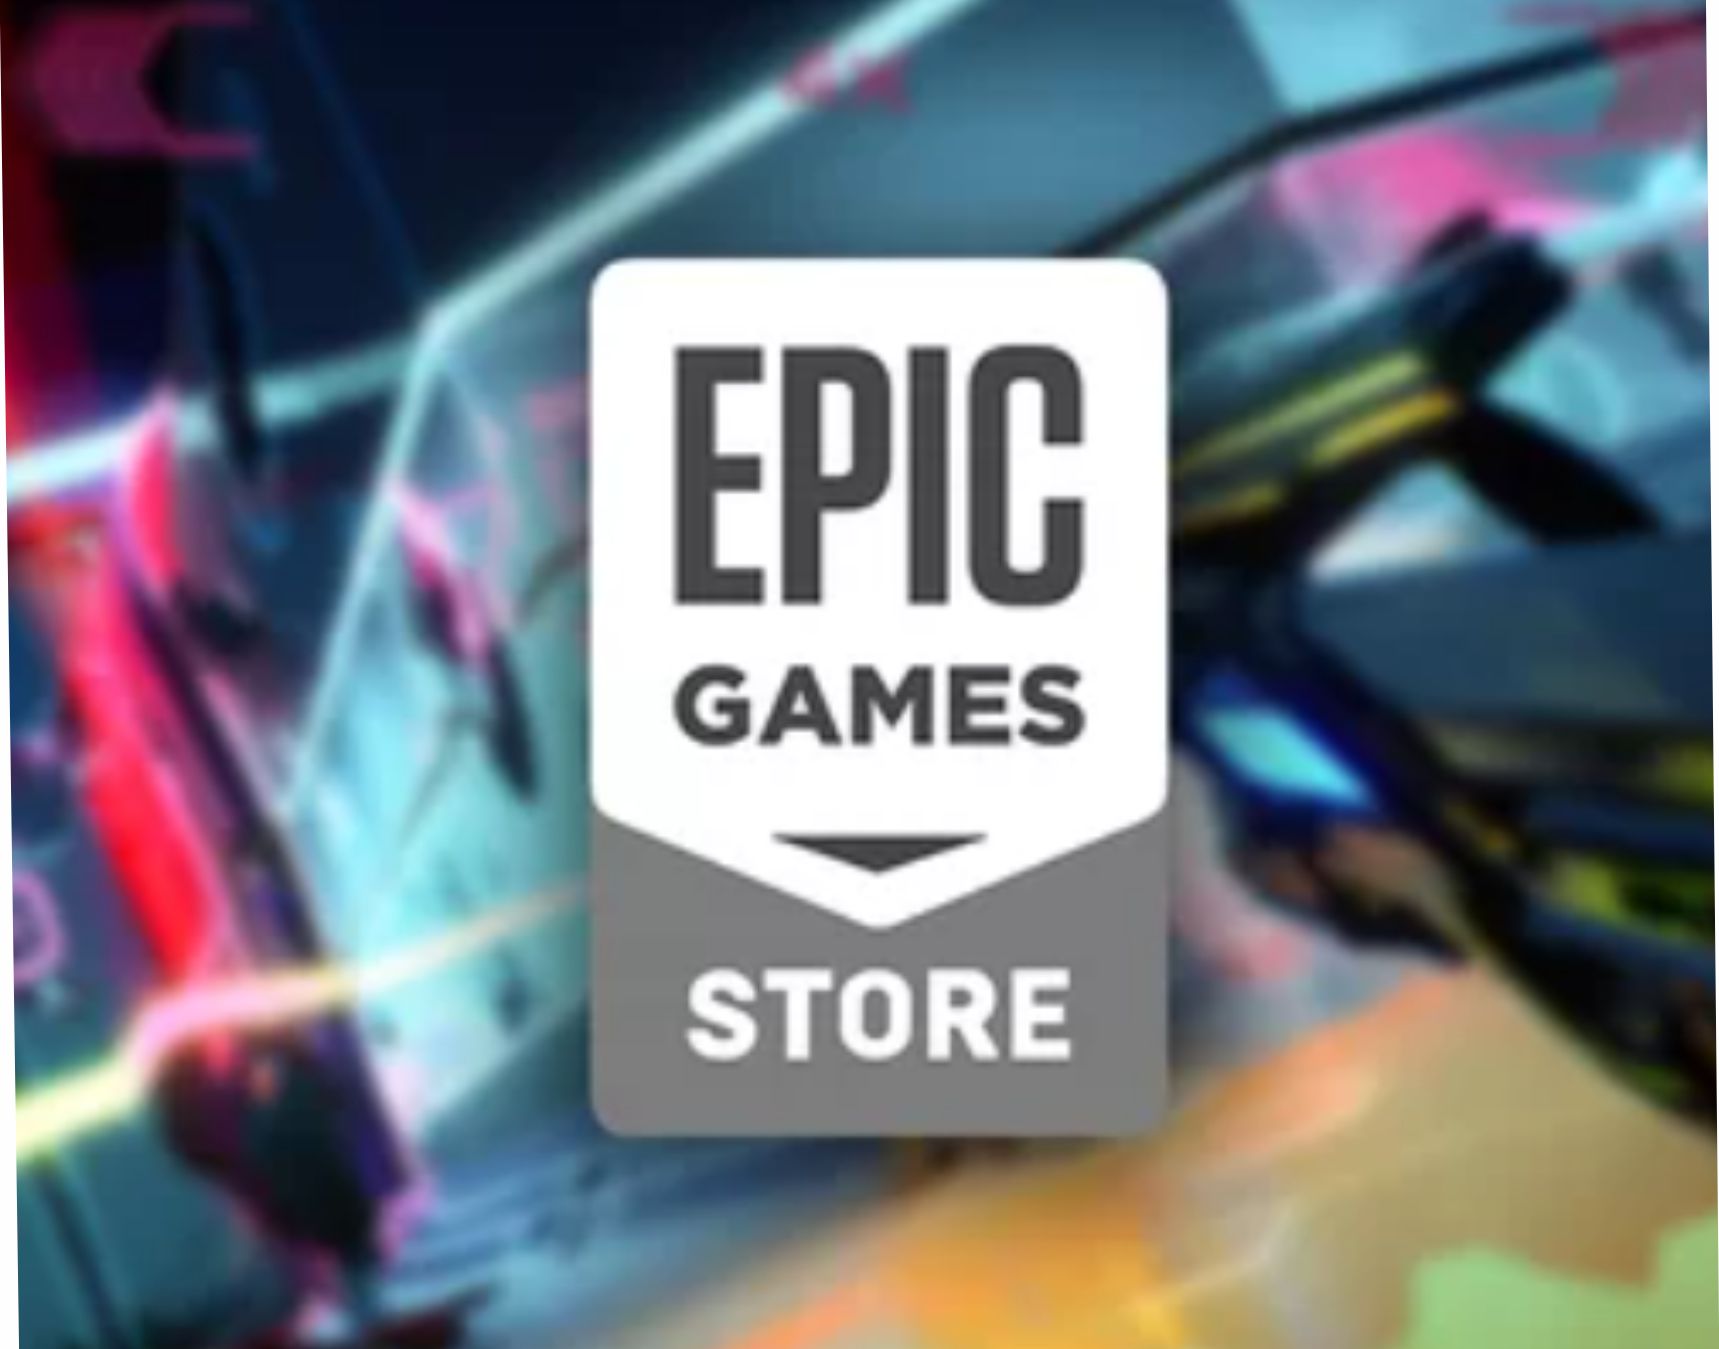 Clássico jogo de tiro está de graça na Epic Games Store